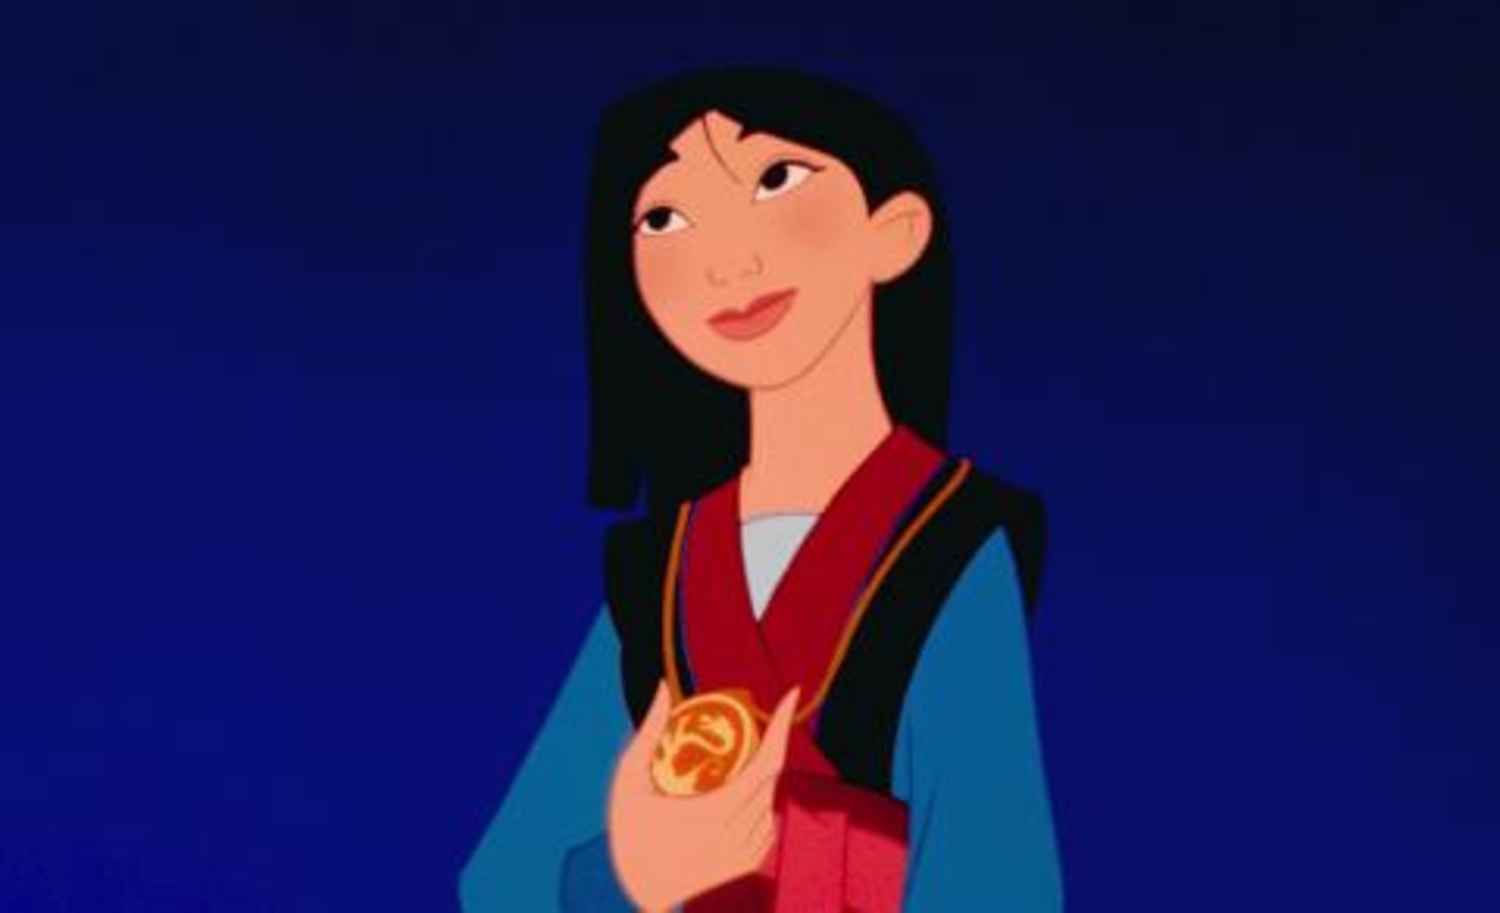 Disney developing live-action 'Mulan' film